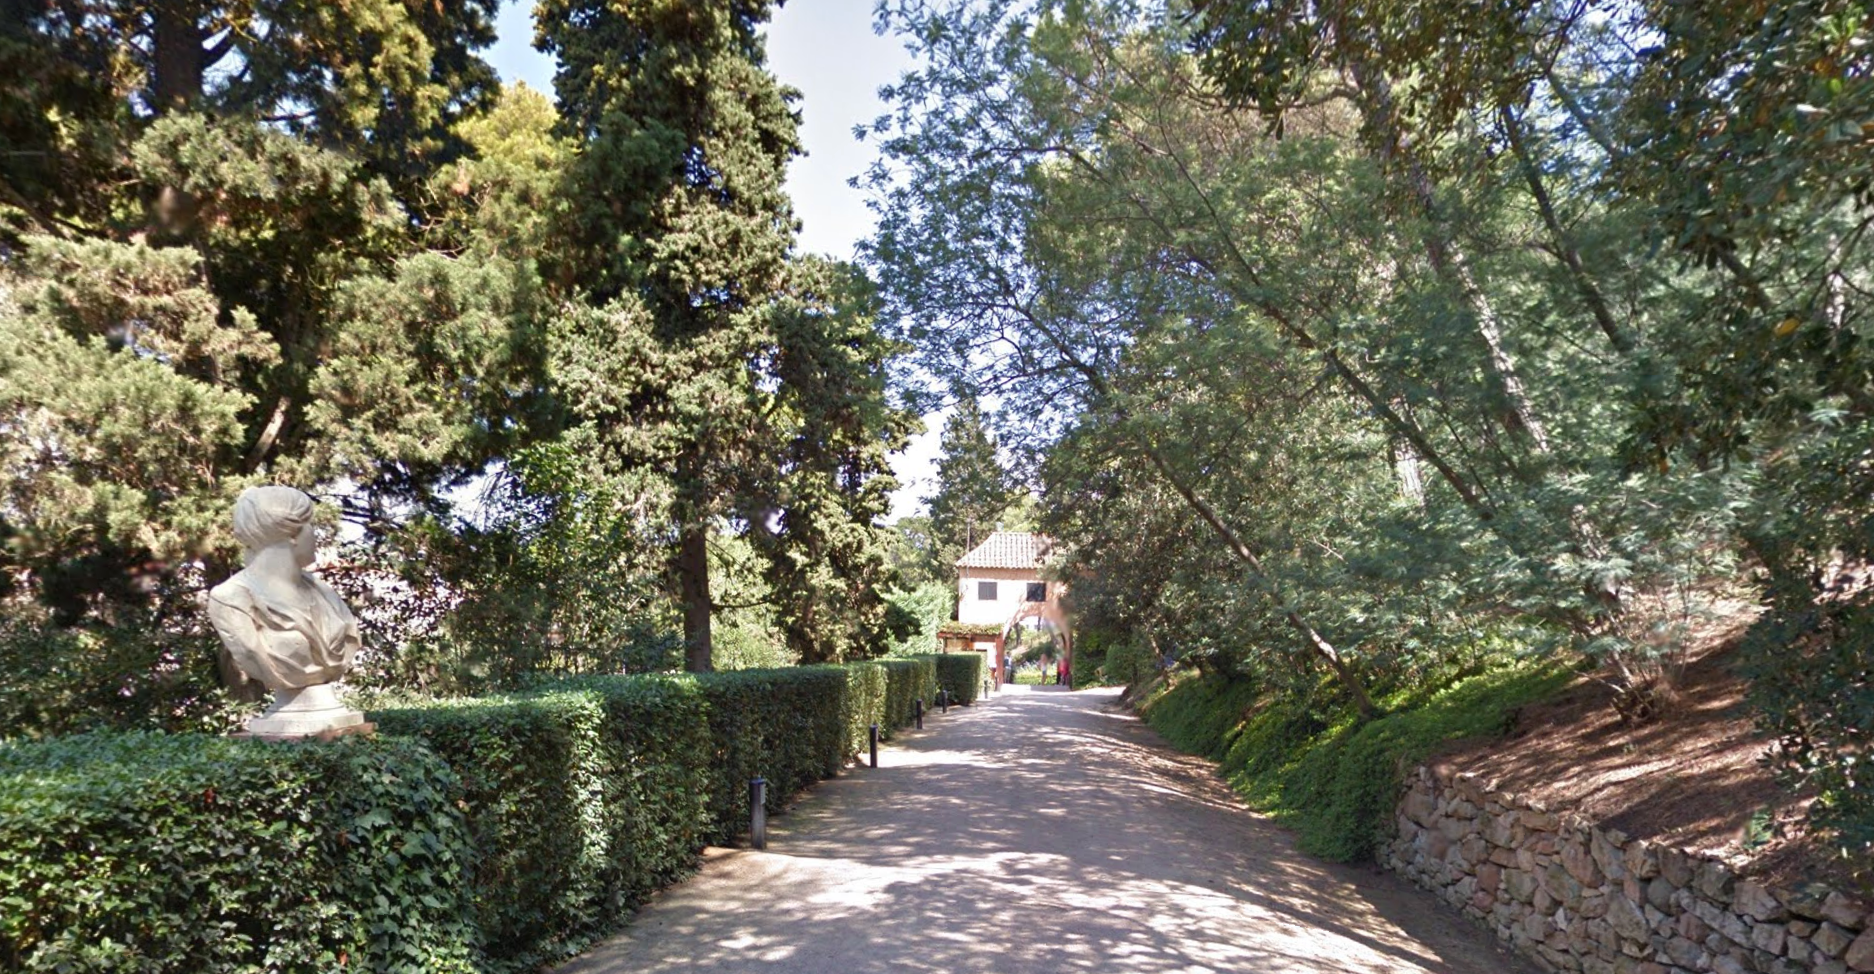 Santa Clotilde Gardens by Google Earth